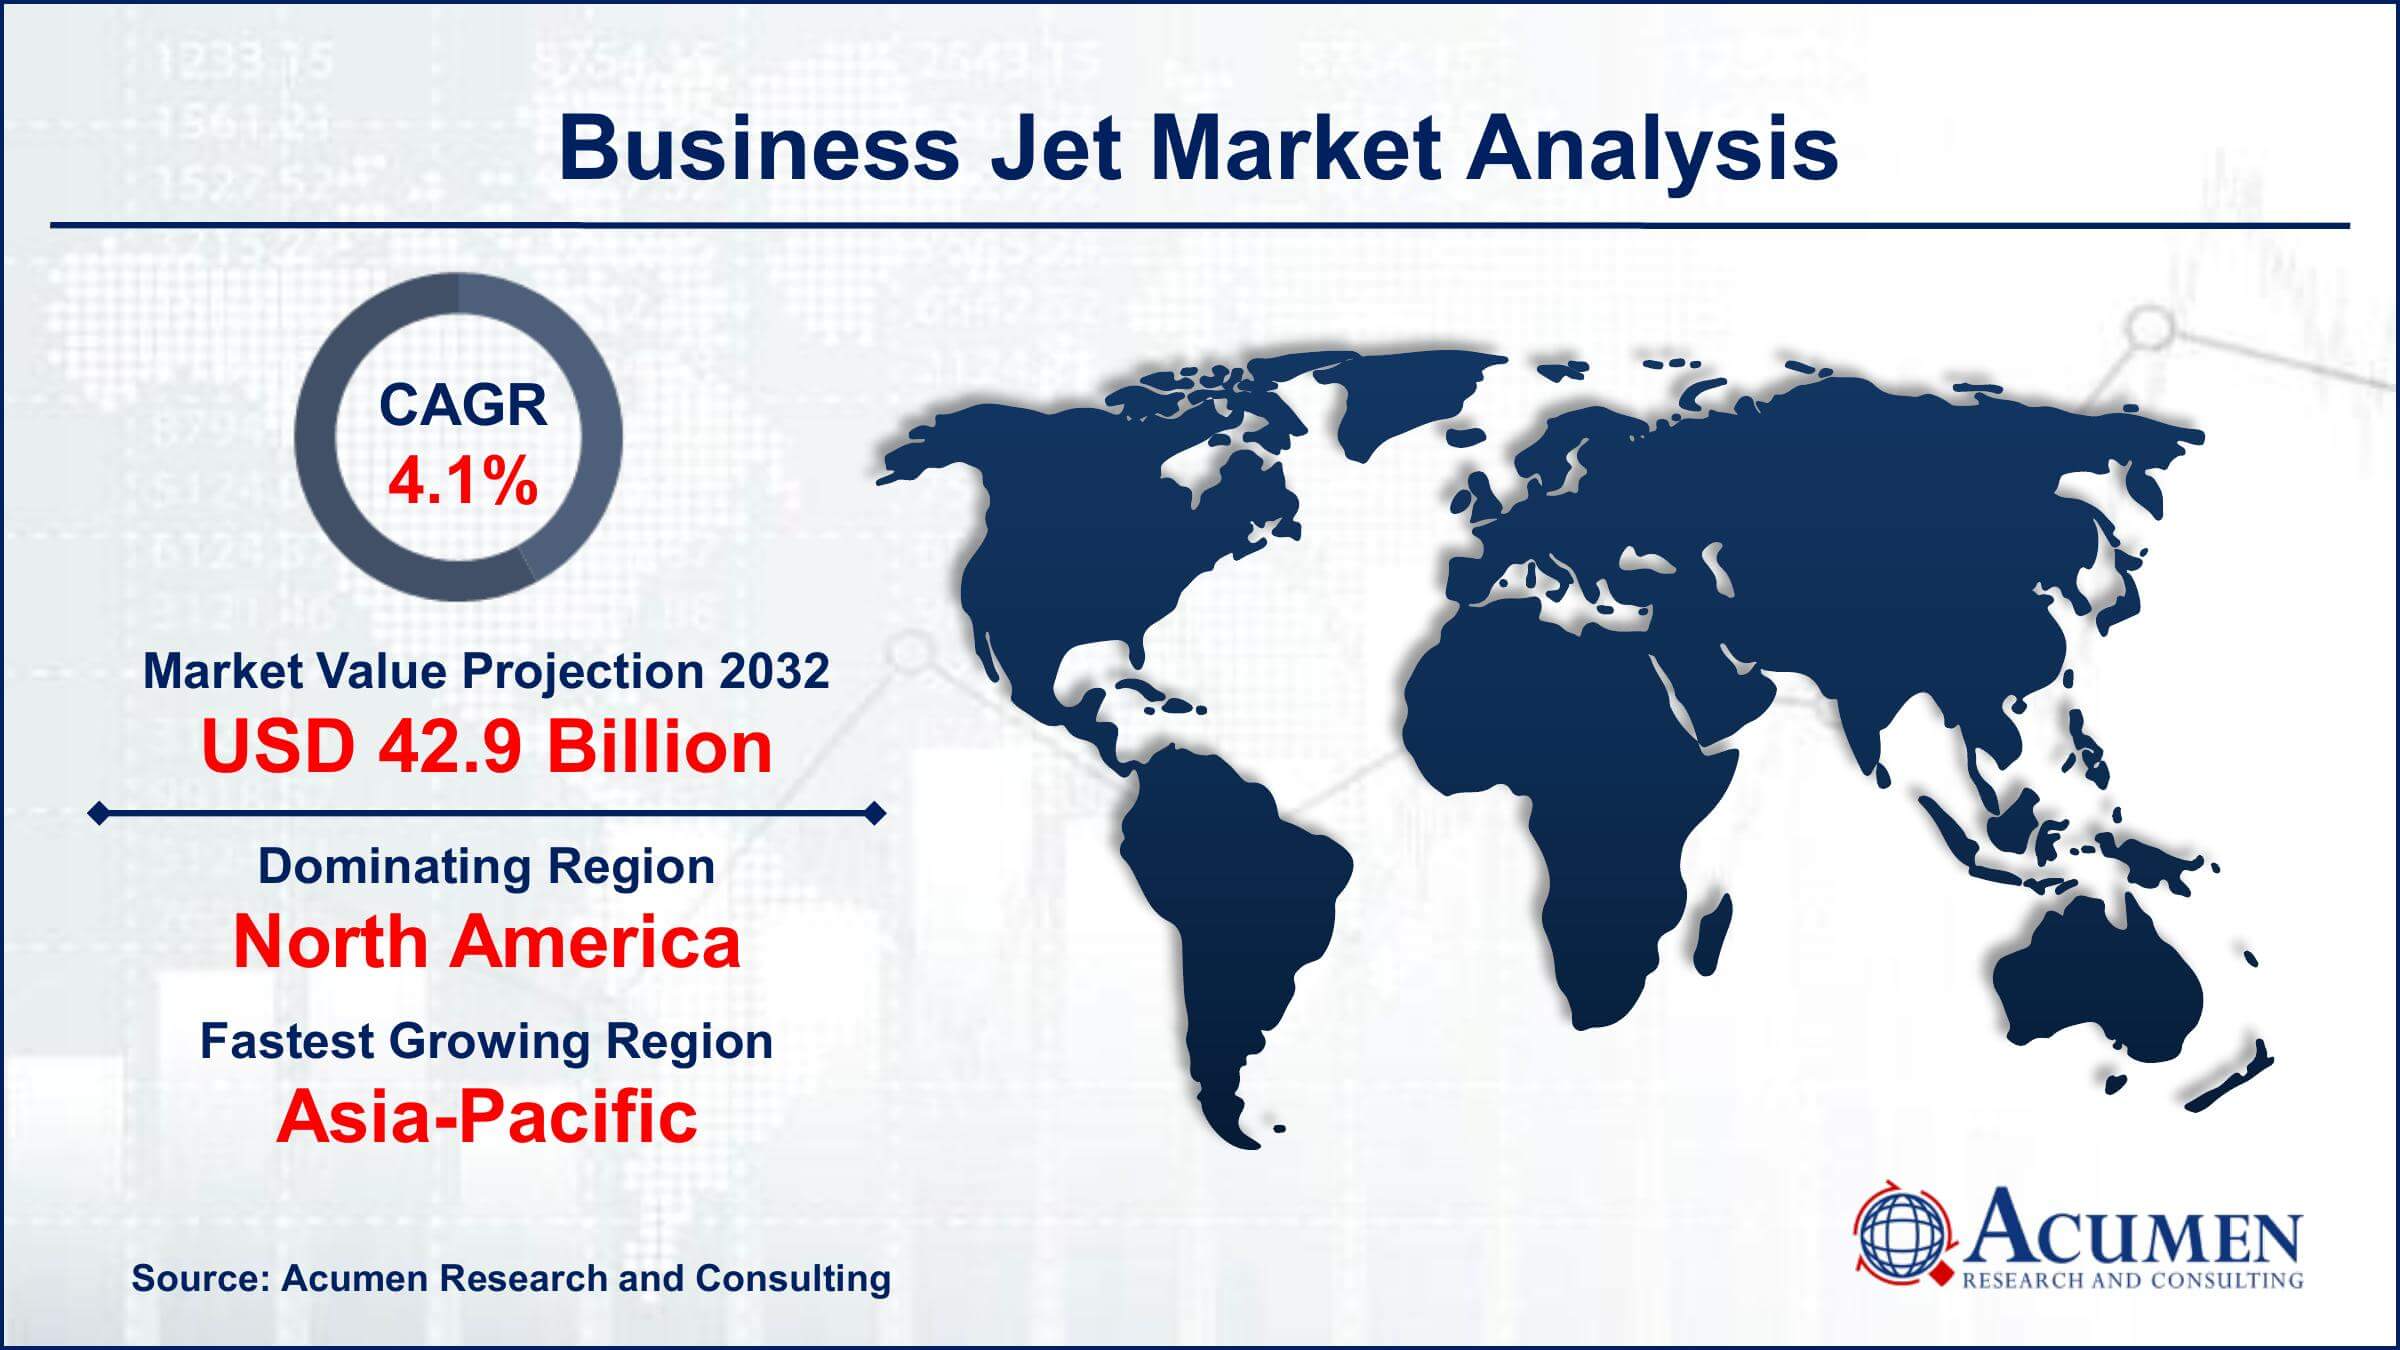 Global Business Jet Market Trends